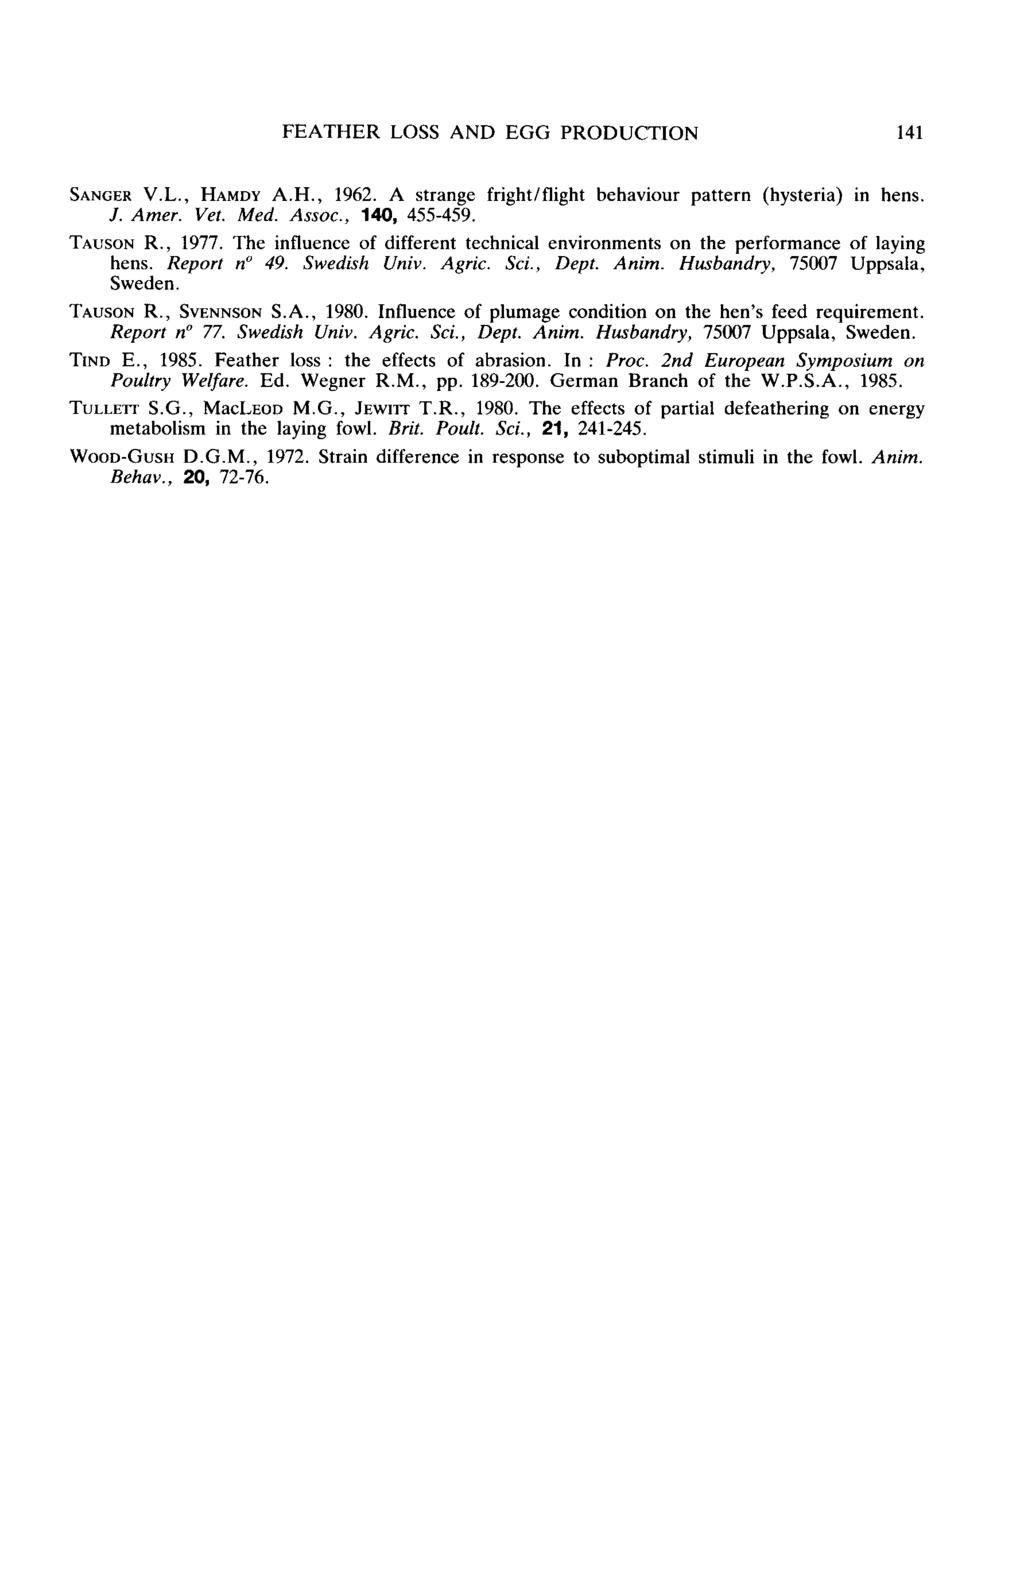 SANGER V.L., HAMDY A.H., 1962. A strange fright/flight behaviour pattern (hysteria) in hens. J. Amer. Vet. Med. Assoc., 140, 455-459. Tausorr R., 1977.